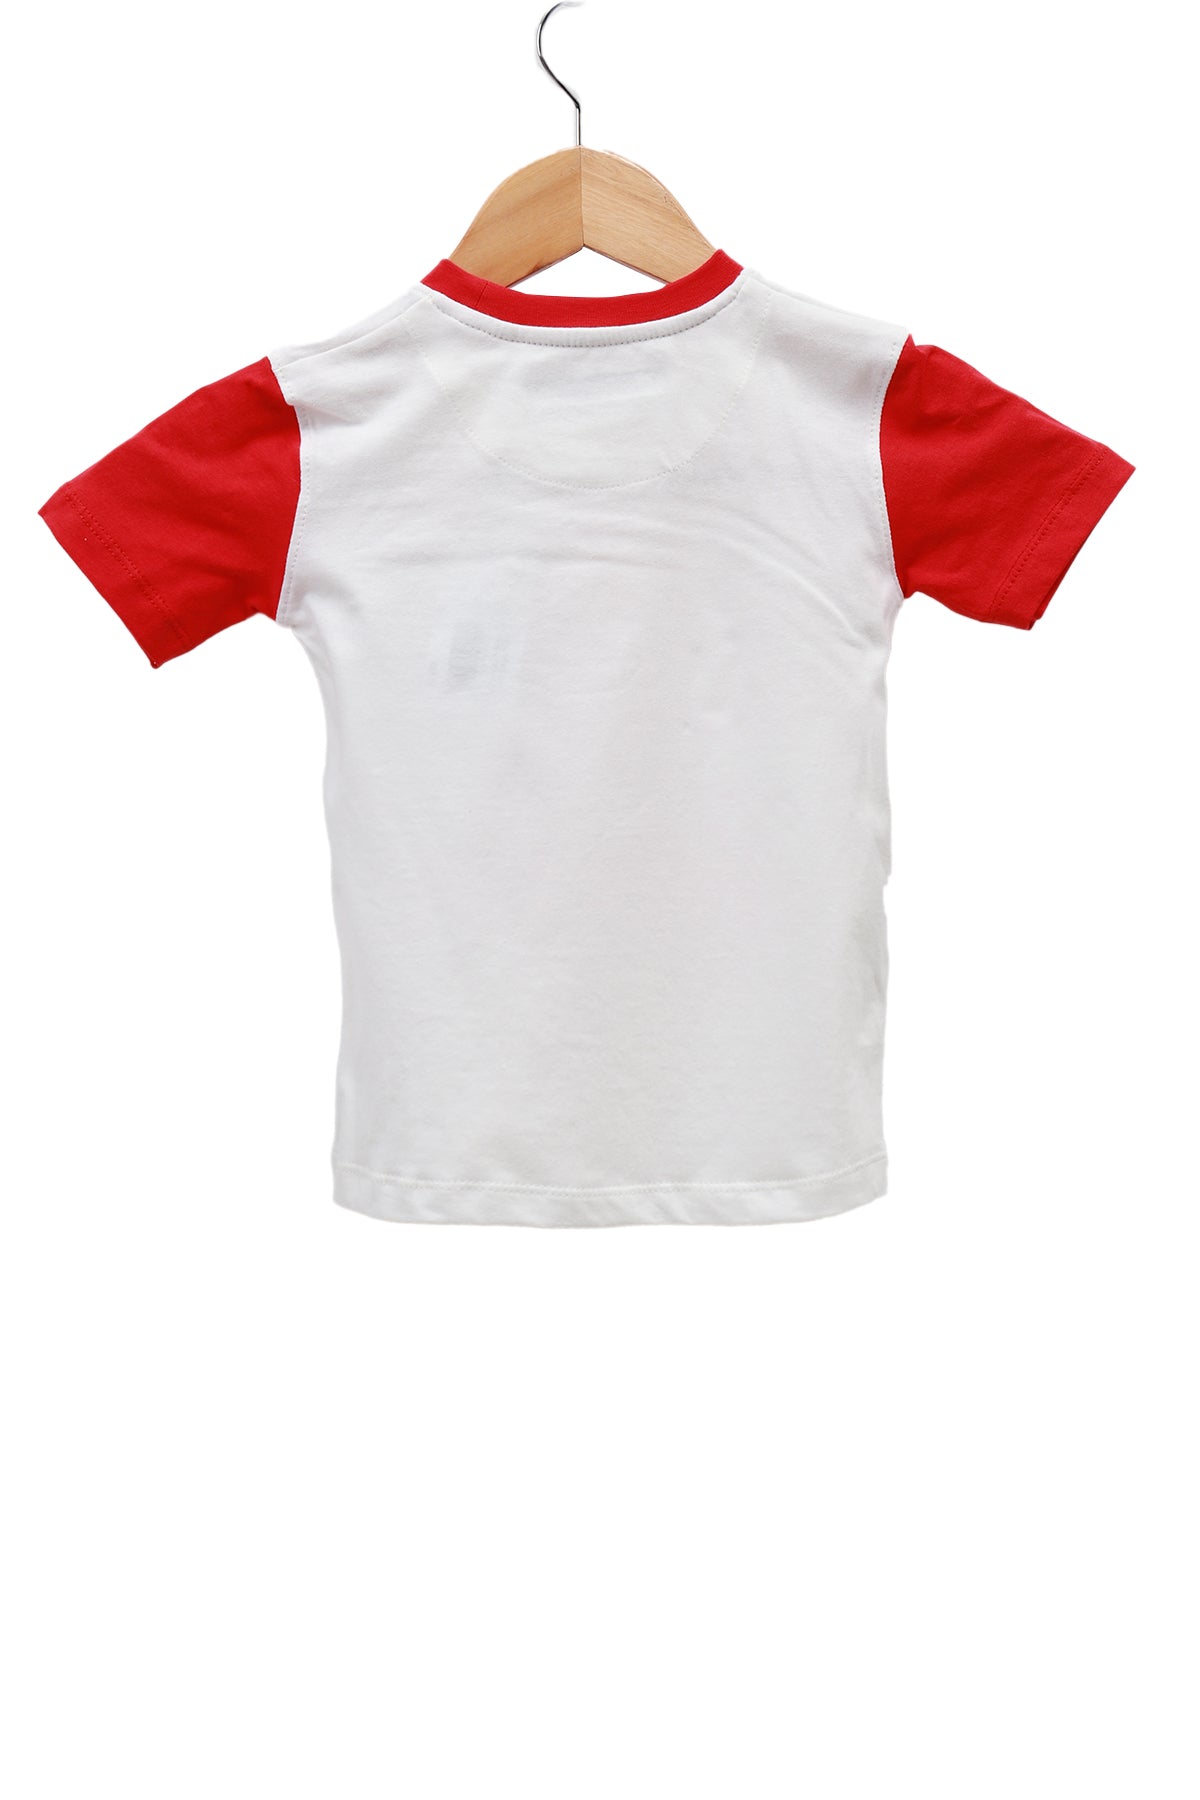 Kids Boy Short Sleeve Casual T-Shirt